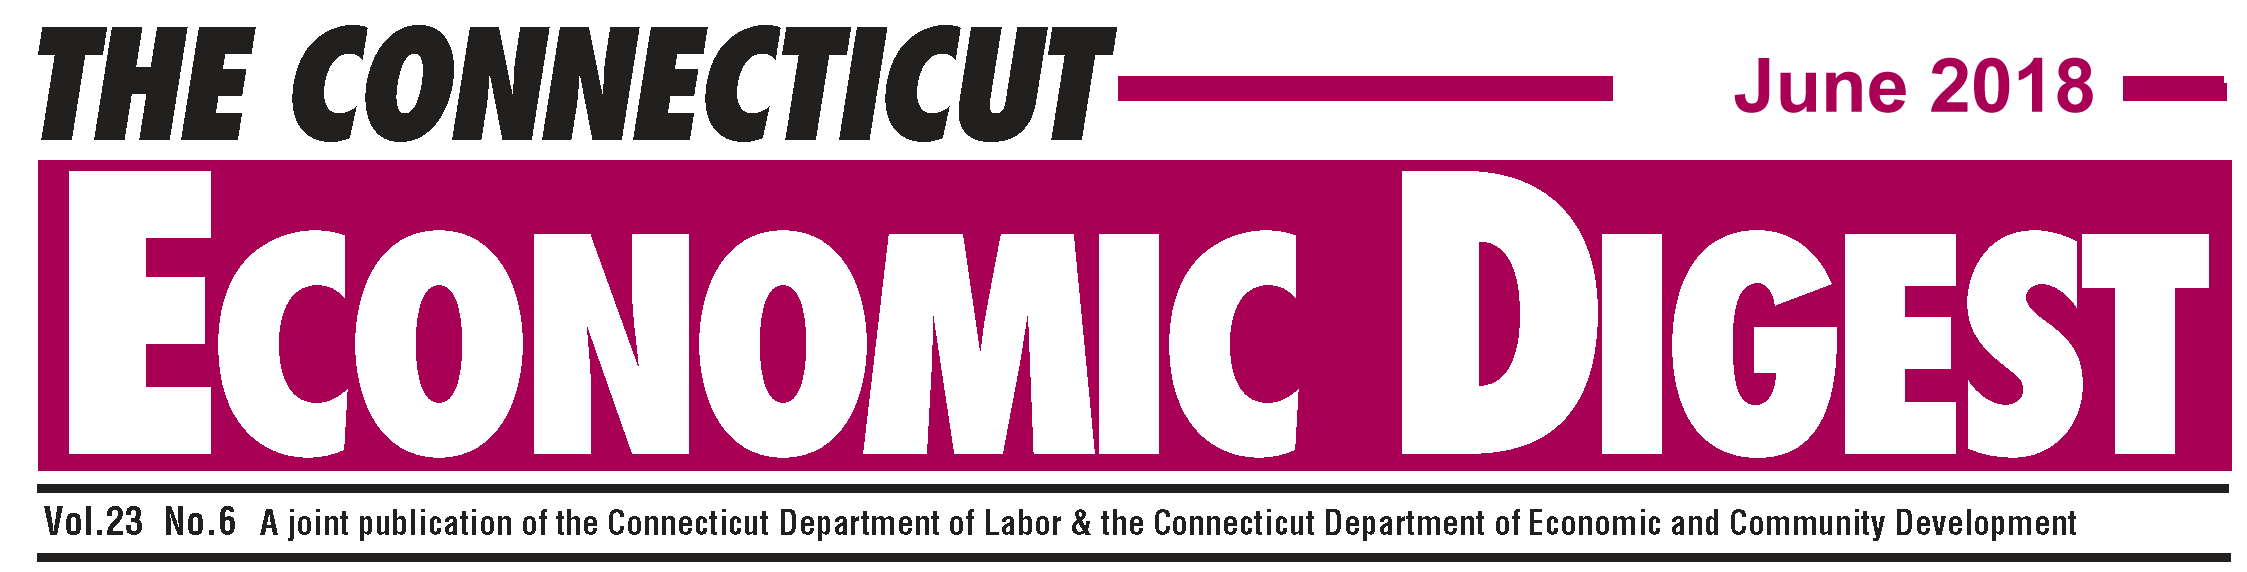 June 2018 Connecticut Economic Digest